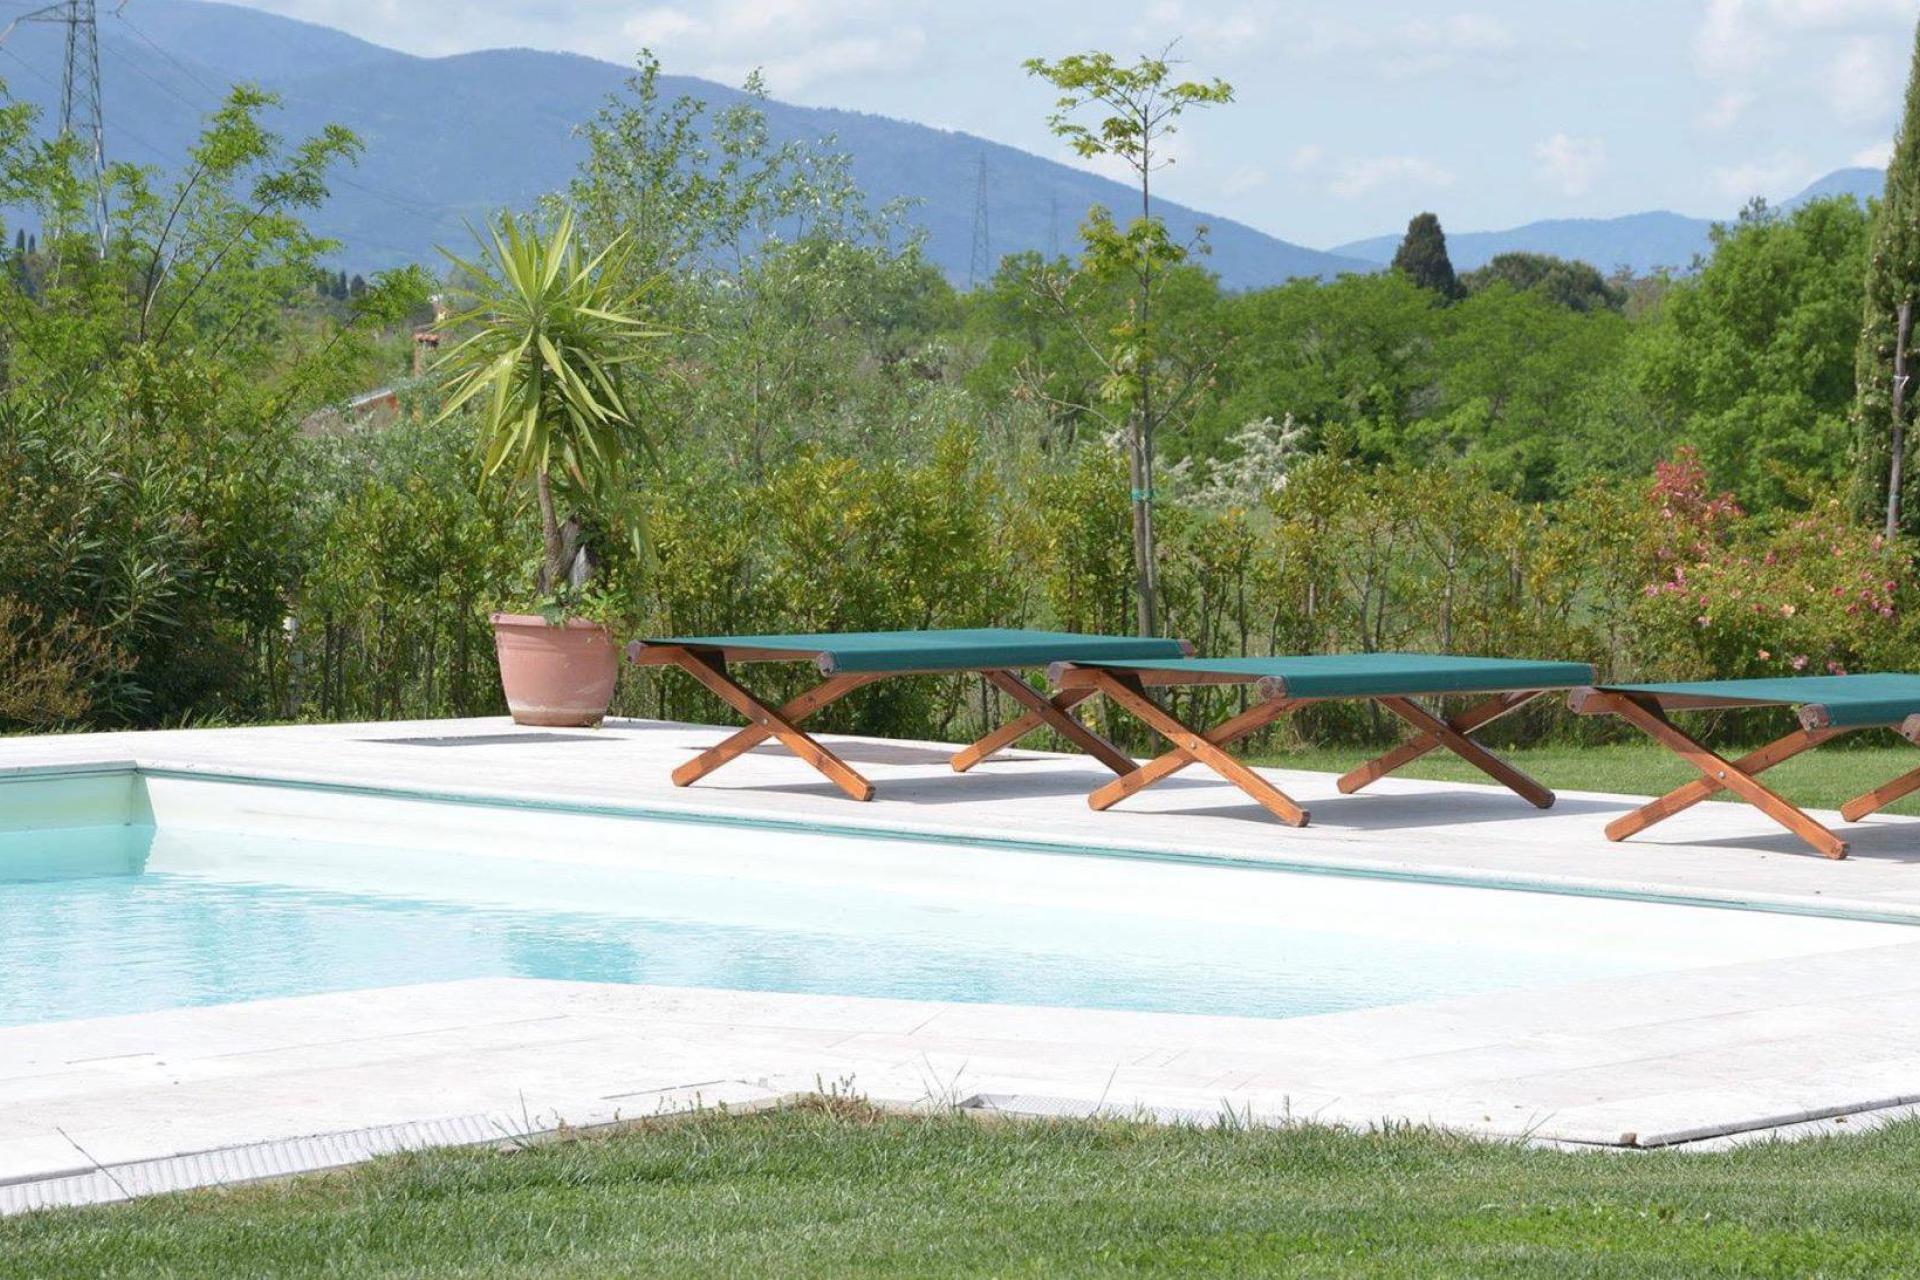 Agriturismo Tuscany Wonderful agriturismo in Tuscany with stylish rooms